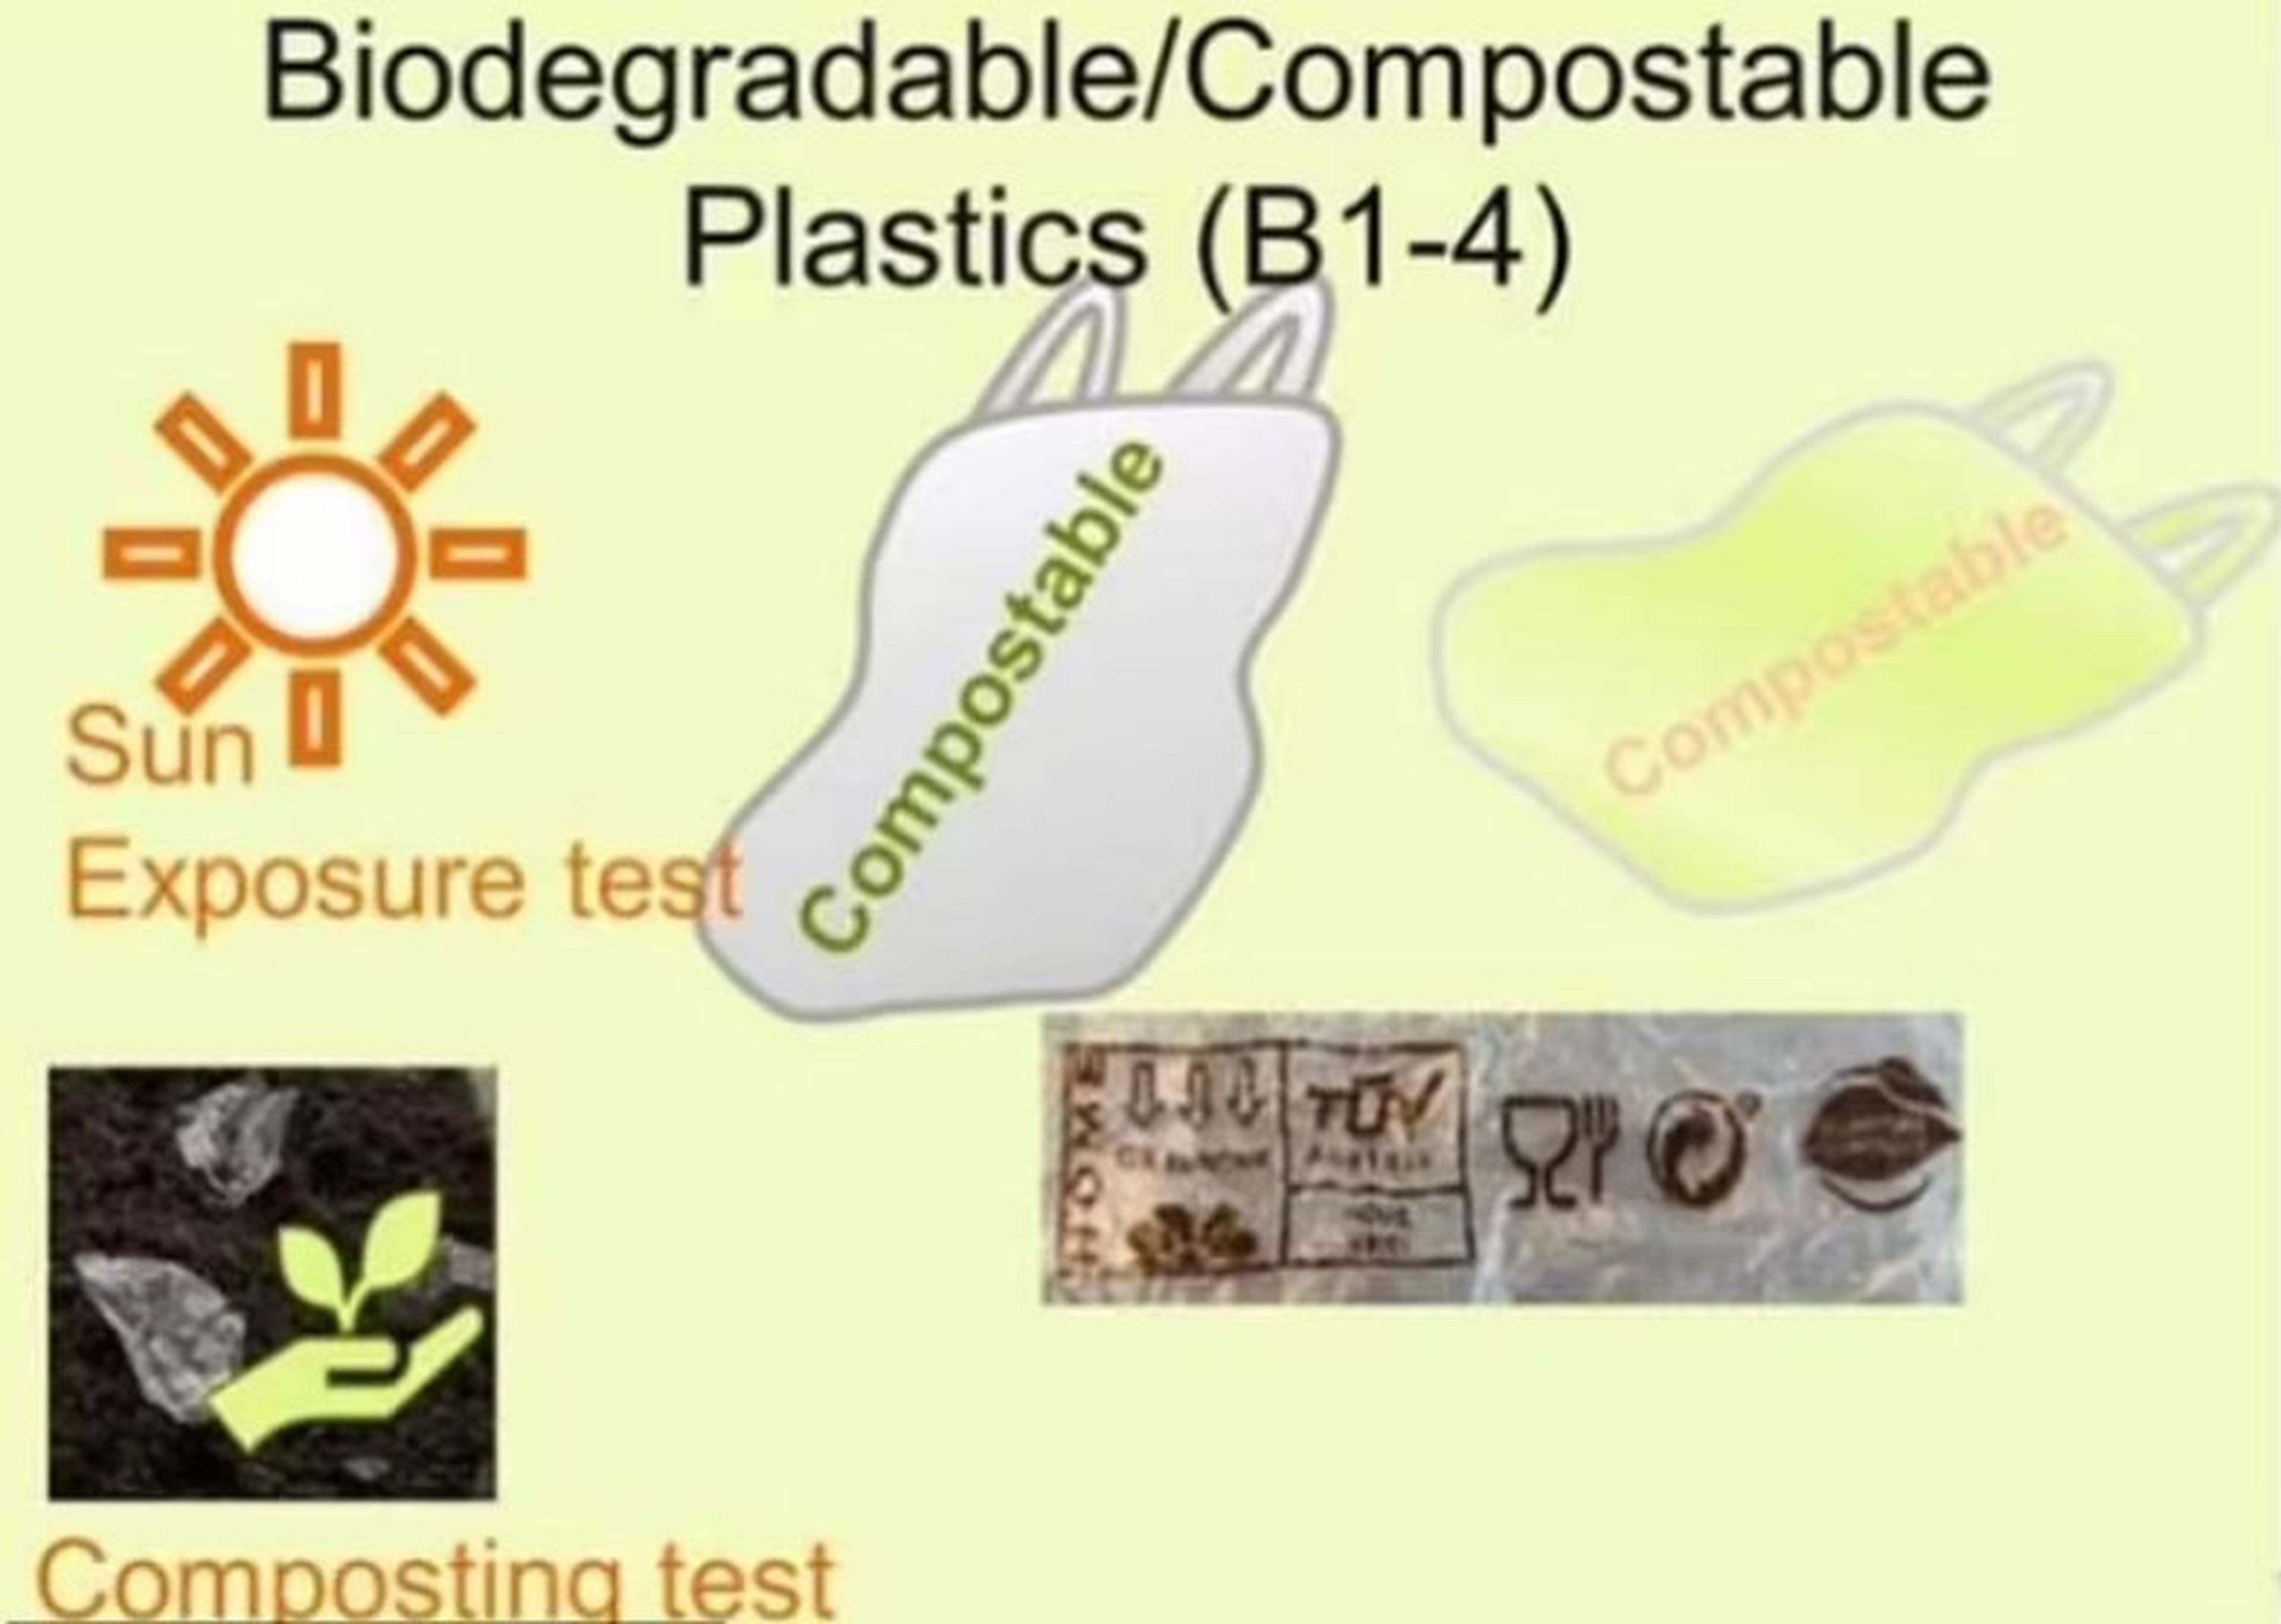 Las bolsas compostables de los supermercados, más tóxicas que las de  plástico